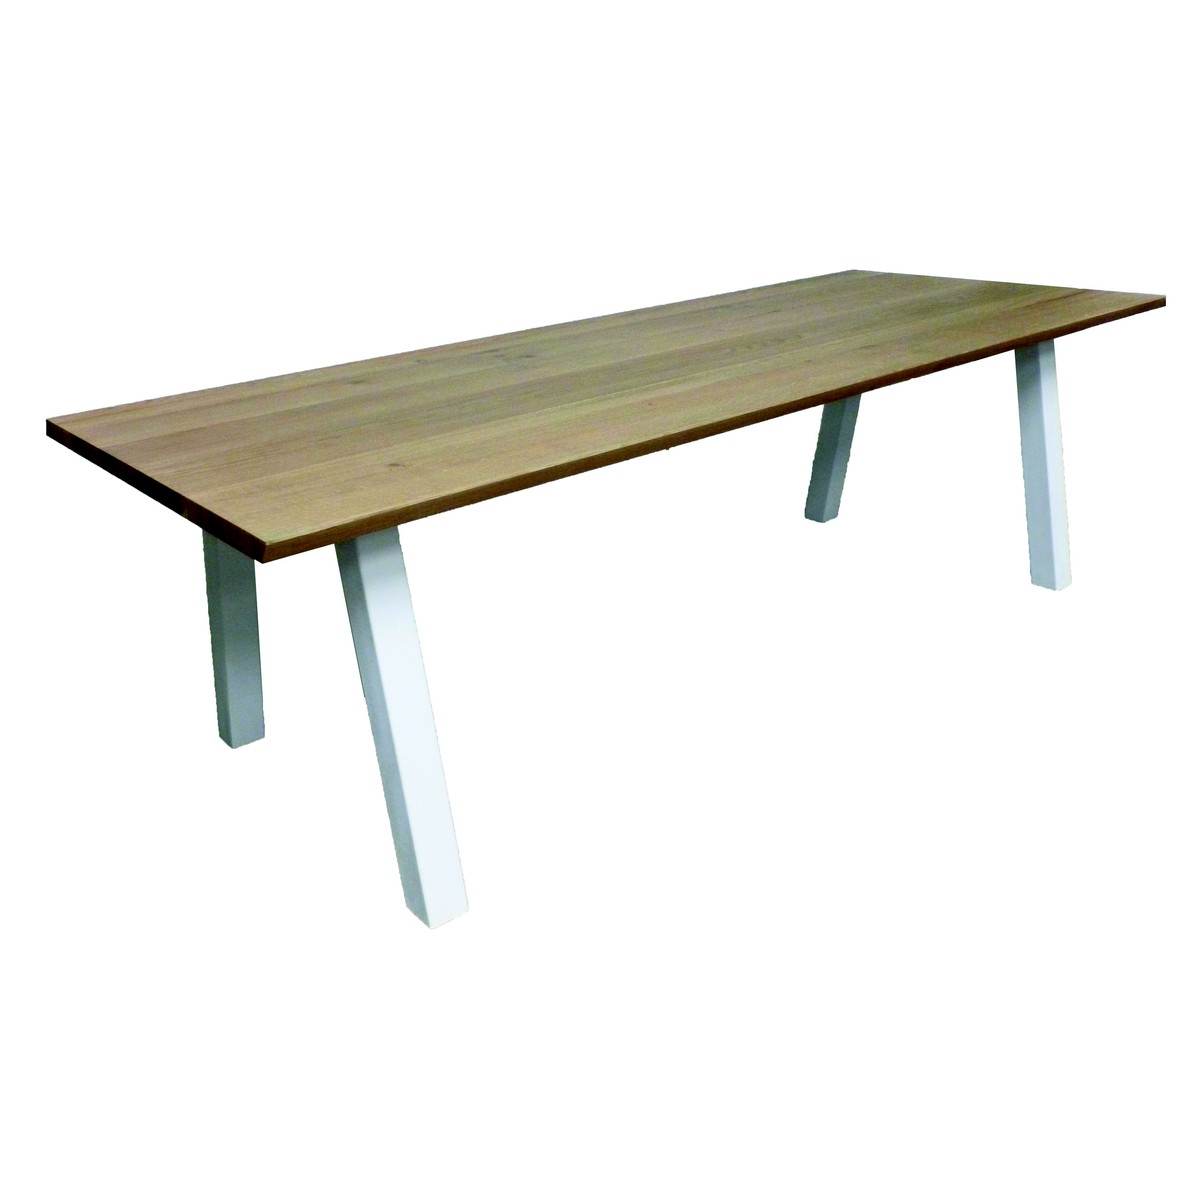   Table haute Aron Droit rectangulaire  160x100x90cm